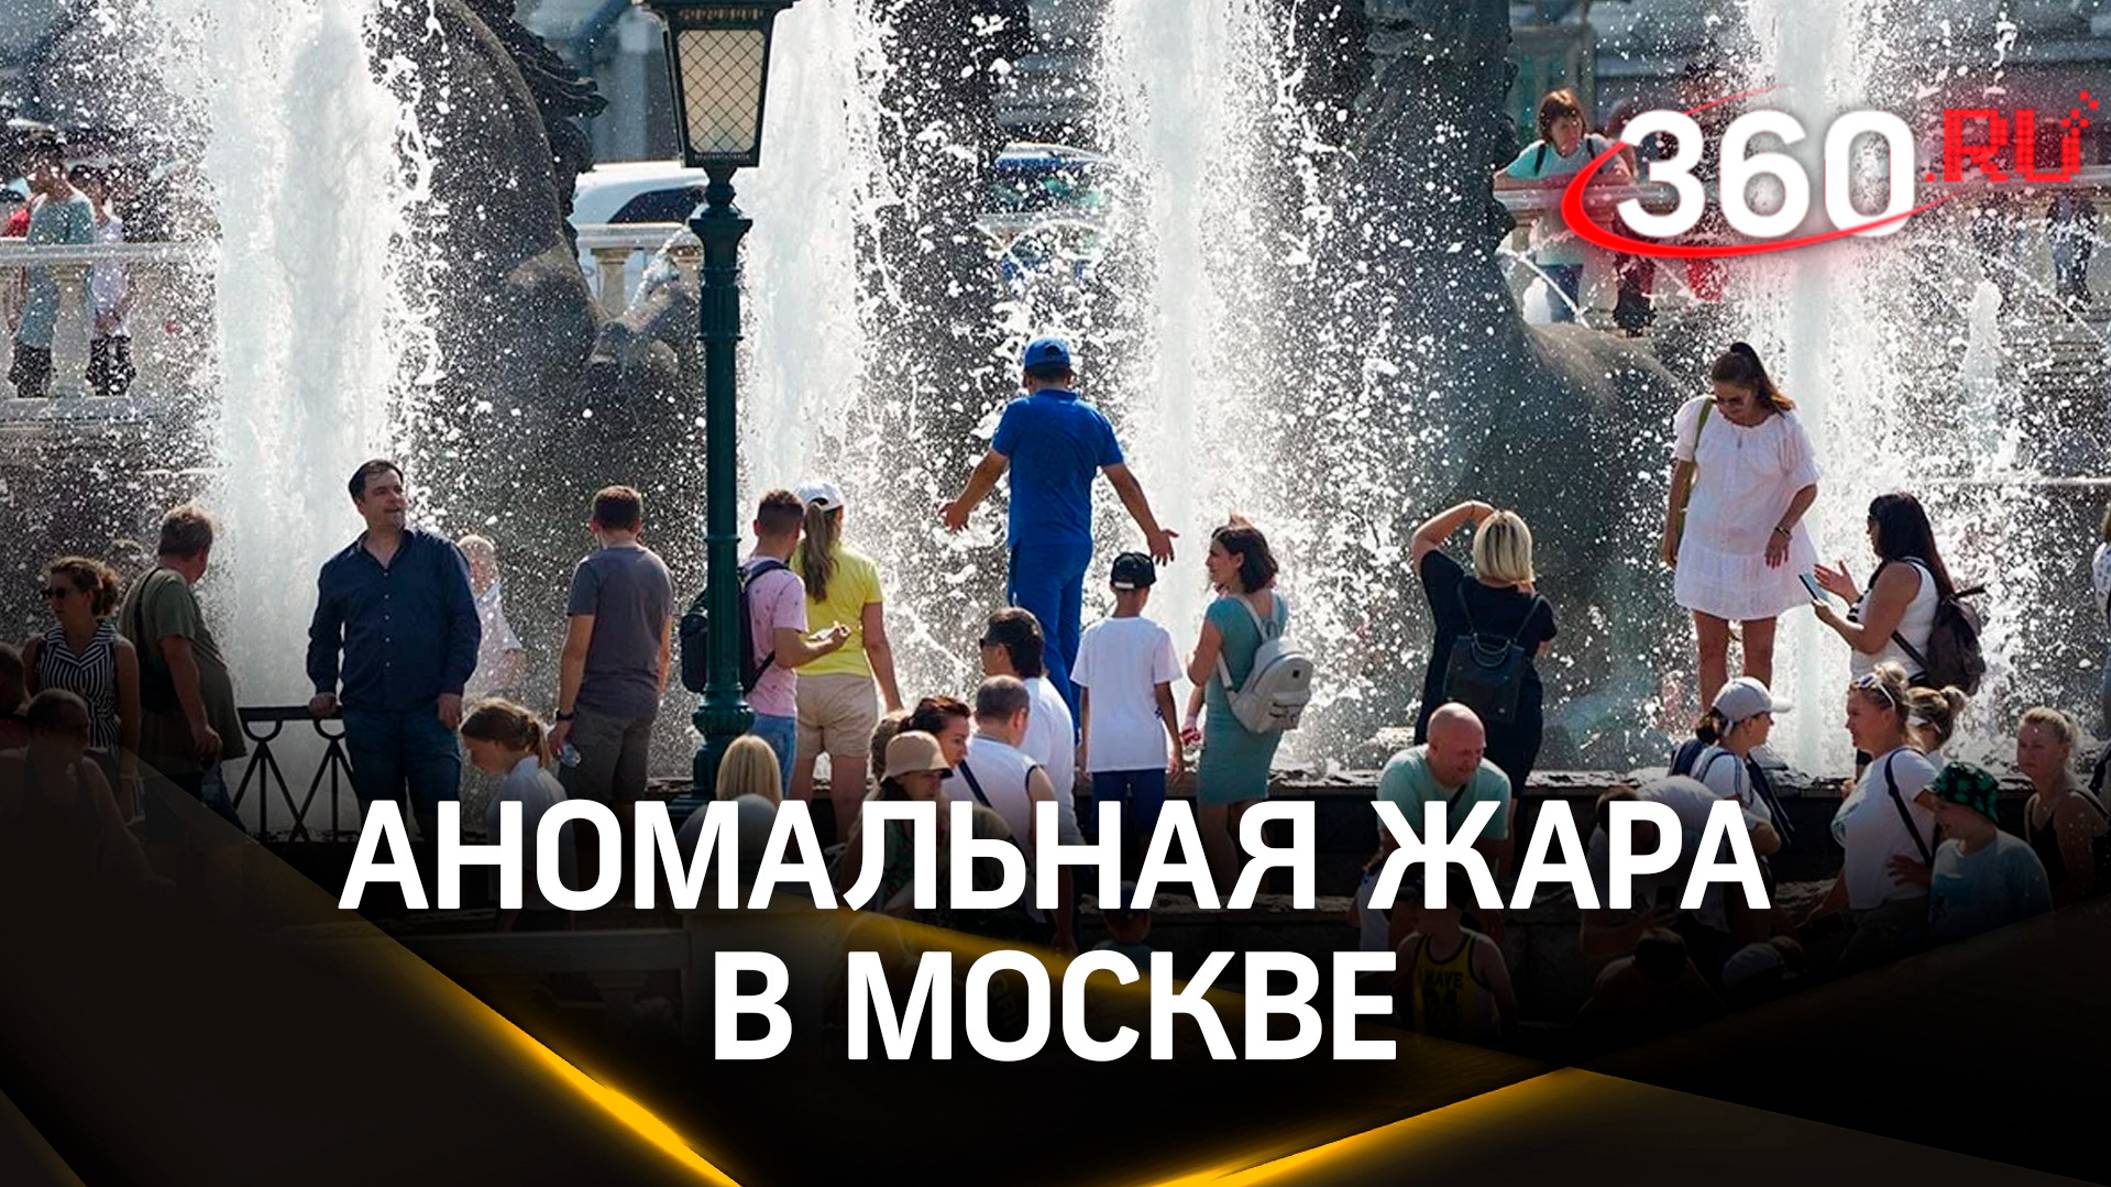 Когда плавится асфальт под ногами: эксперты рассказали, как пережить аномальную жару в Москве